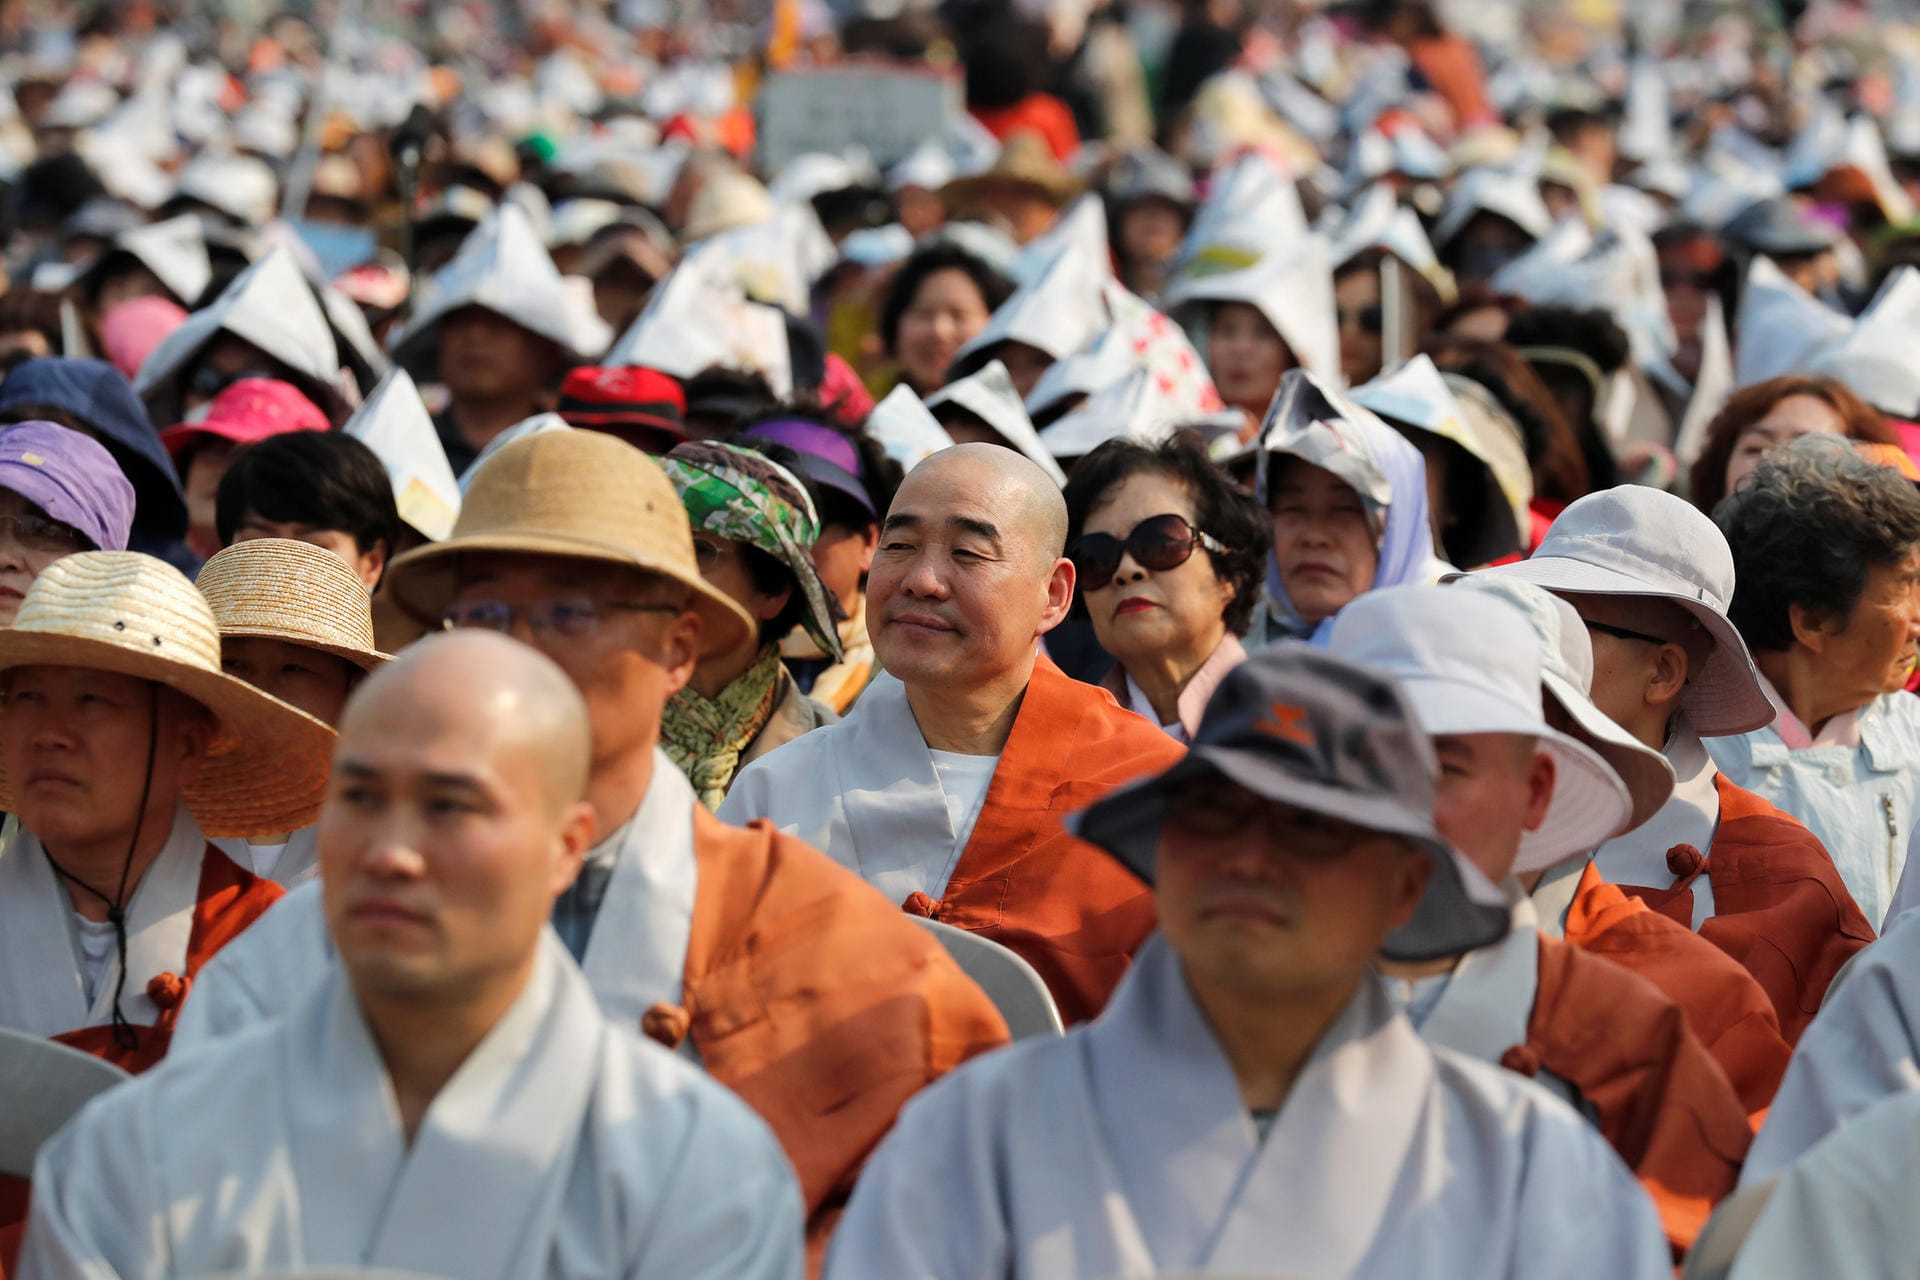 Die Gespräche wurden in vielen Teilen der koreanischen Halbinsel mit großer Freude vernommen. In Soul beteten tausende Mönche und Menschen gemeinsam für den Koreanischen Friedensprozess.